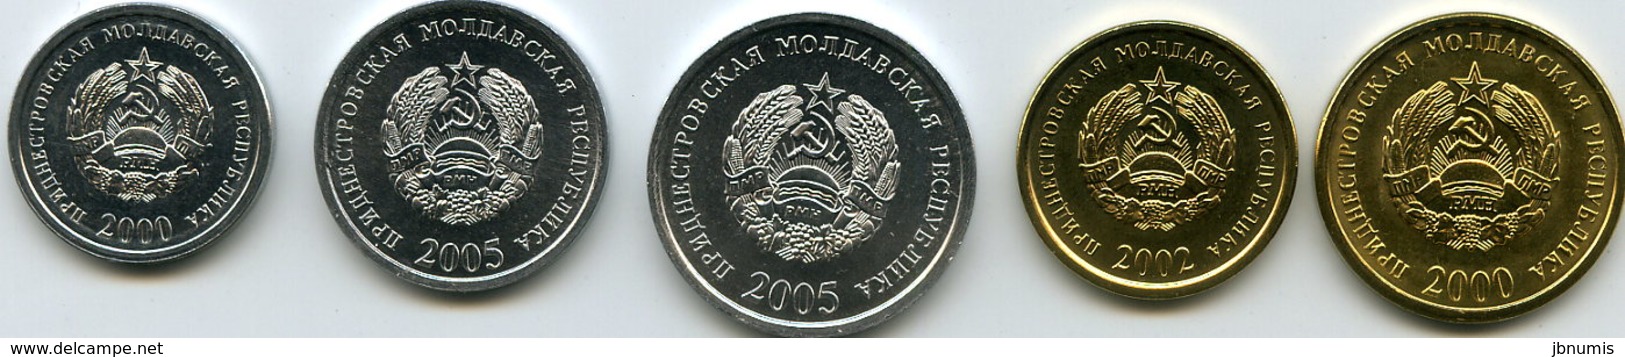 Moldavie Transdniestrie Transdnistria Série De 5 Pièces 1 à 50 Kopeek 2000 - 2005 Unc - Moldavie